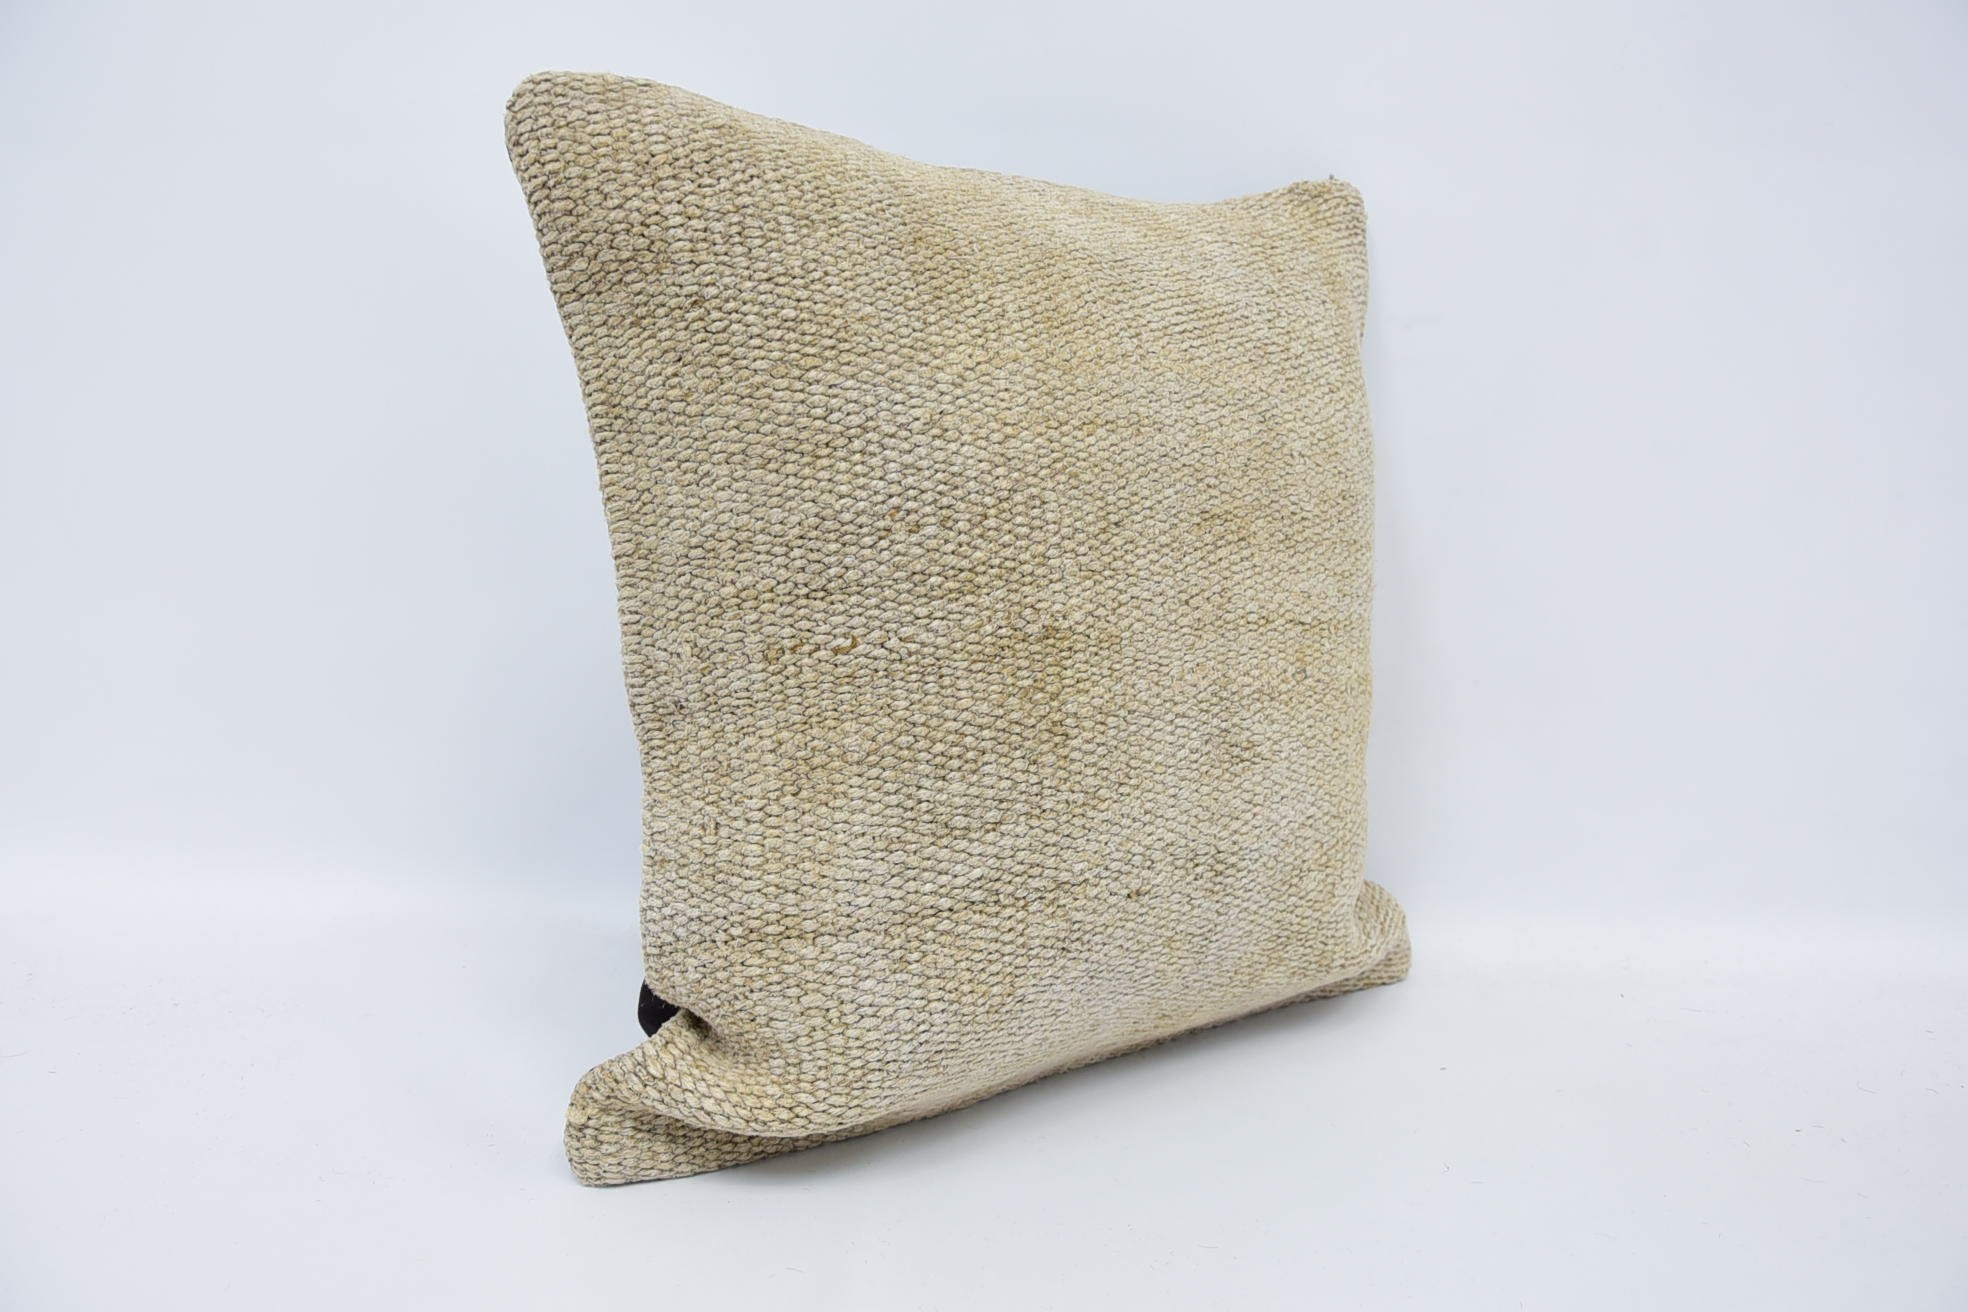 Handmade Kilim Cushion, 18"x18" Beige Pillow Cover, Vintage Pillow, Chair Pillow Cover, Vintage Kilim Throw Pillow, Bench Cushion Case